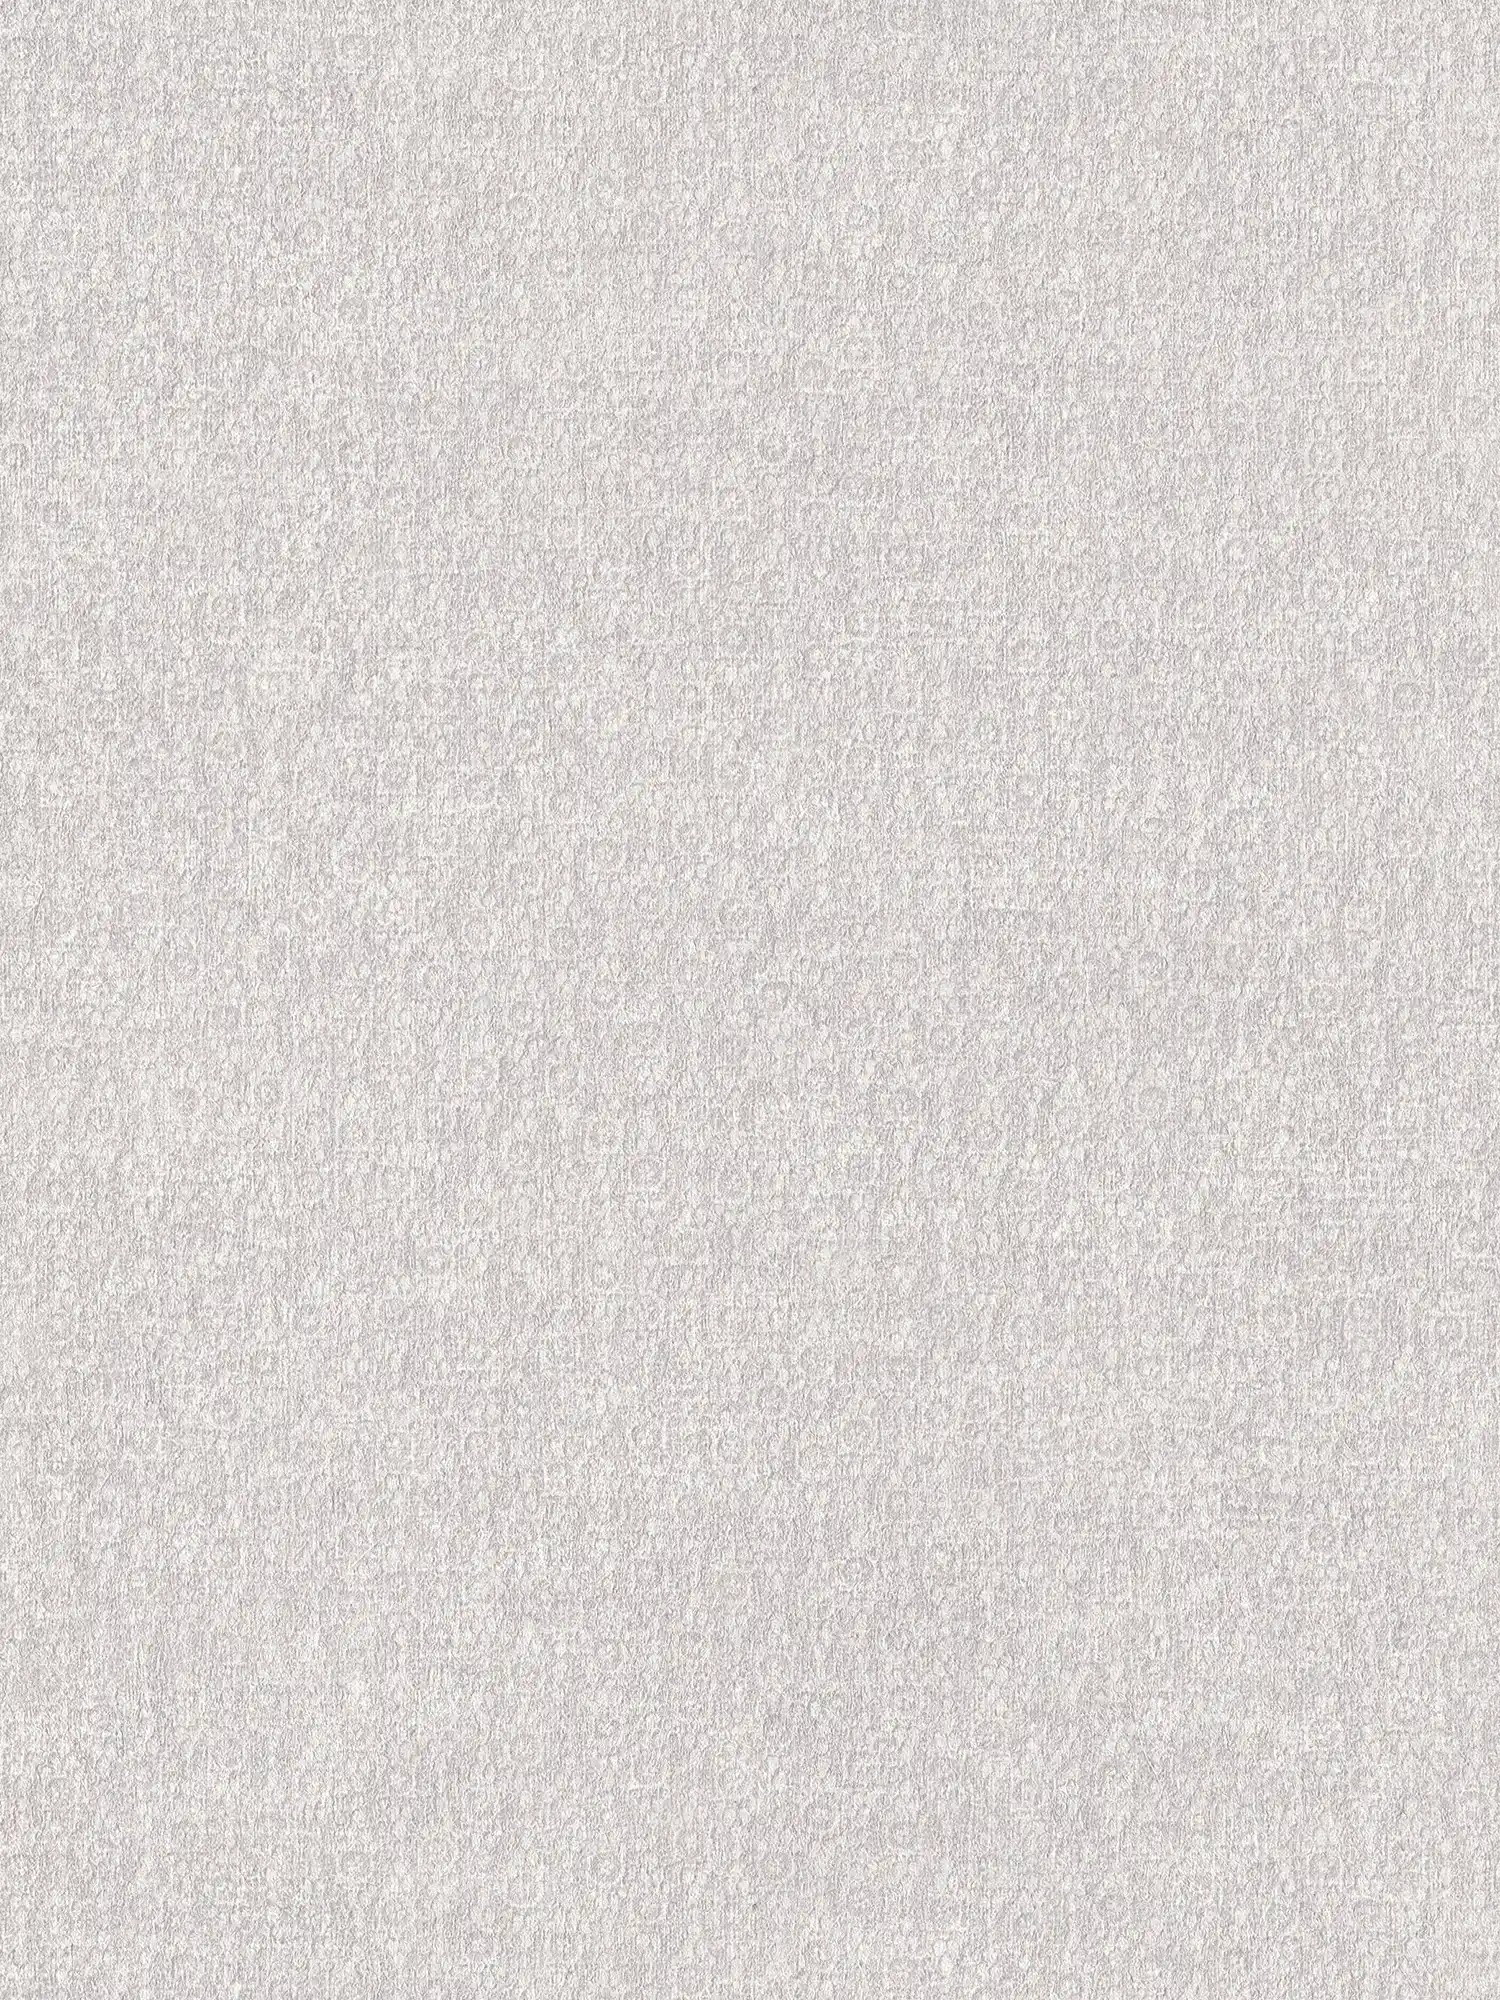 Carta da parati in tessuto non tessuto liscio crema con effetto texture tessile
